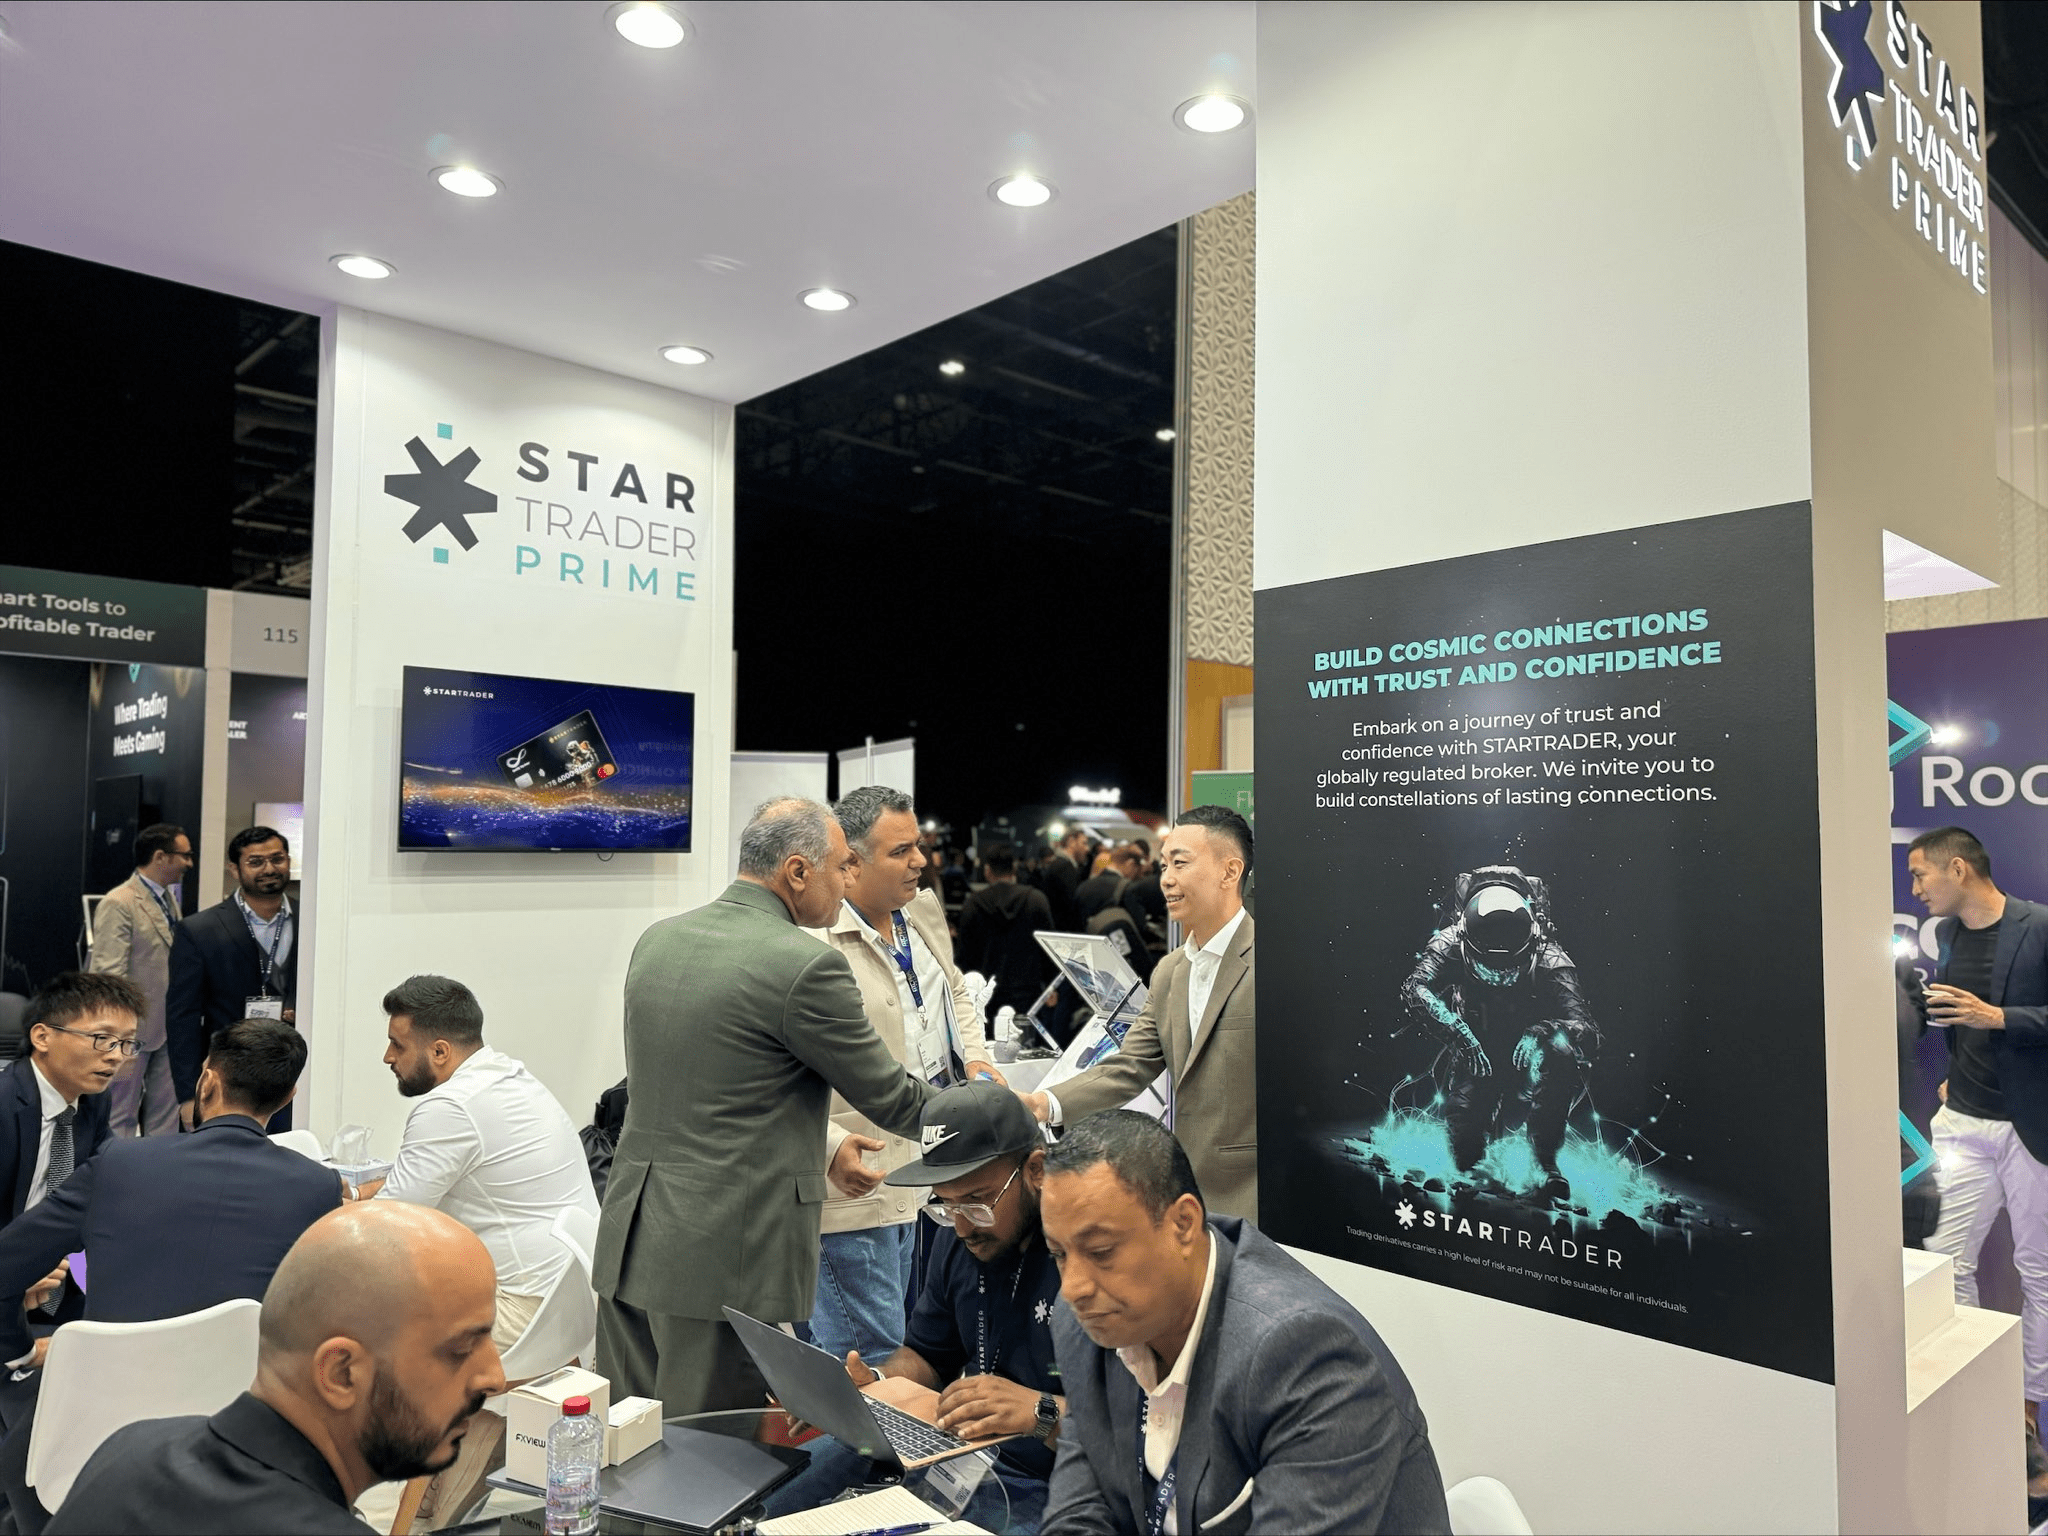 STARTRADER Prime荣获2024 iFX 金融博览会迪拜站最佳ECN/STP经纪商奖项